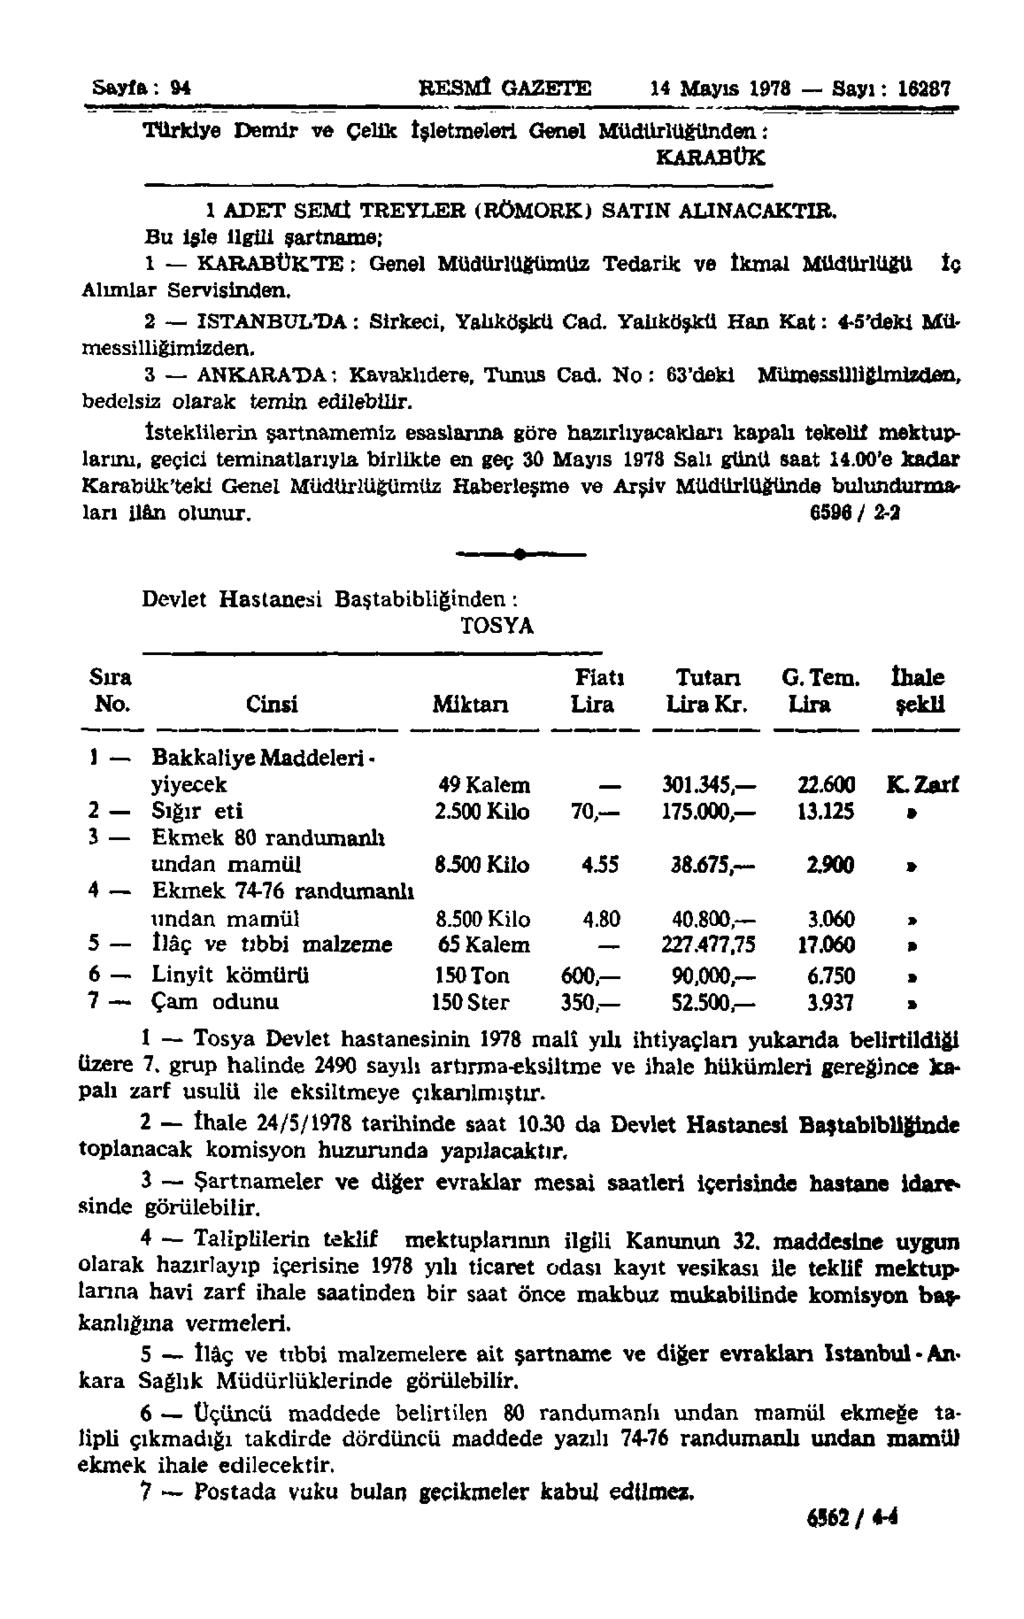 Sayfa: 94 RESMÎ GAZETE 14 Mayıs 1978 Sayı: 16287 Türkiye Demir ve Çelik İşletmeleri Genel Müdürlüğünden: KARABÜK 1 ADET SEMİ TREYLER (RÖMORK) SATIN ALINACAKTIR.